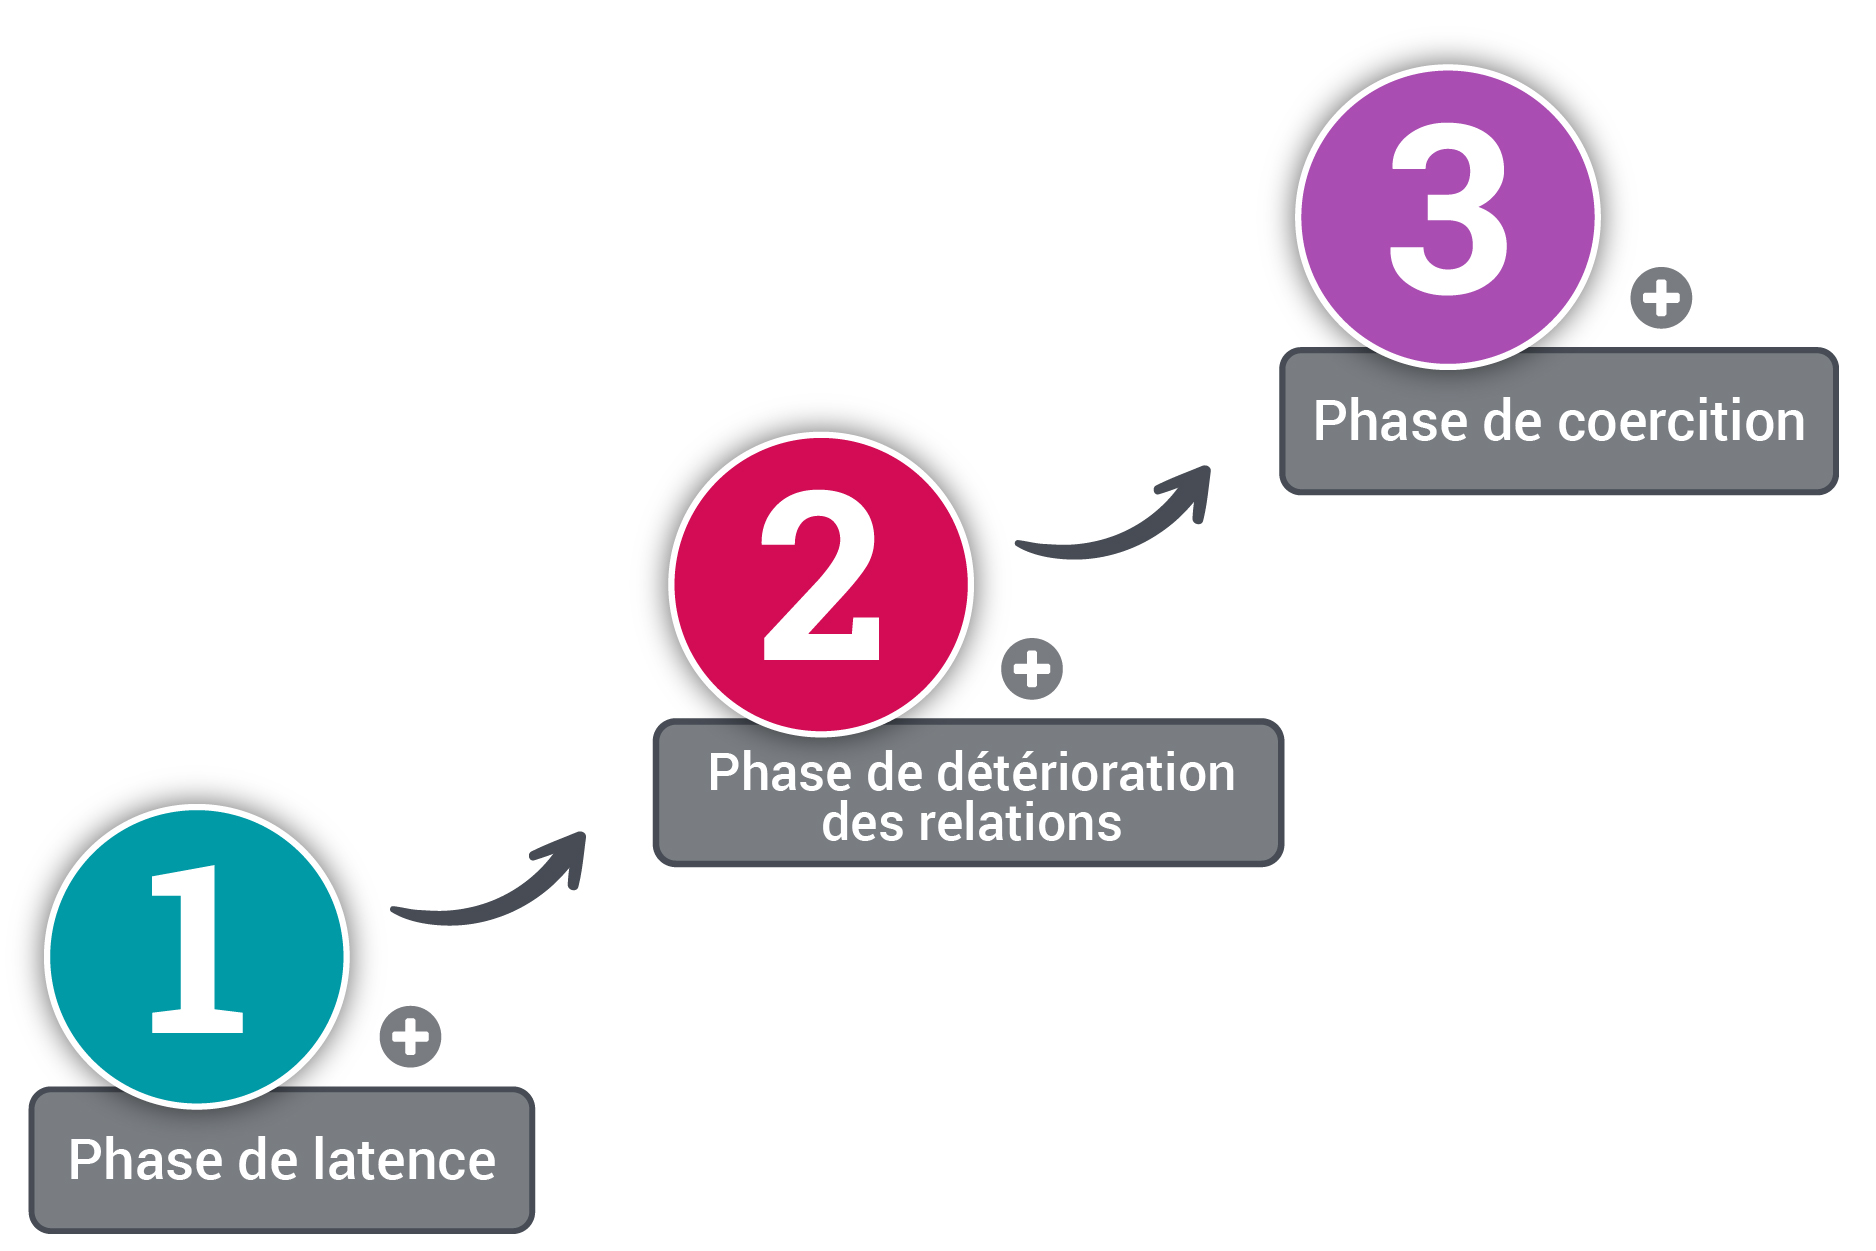 Les trois phases de l’évolution du conflit (latence, détérioration des relations et coercition) sont présentés dans un ordre ascendant.